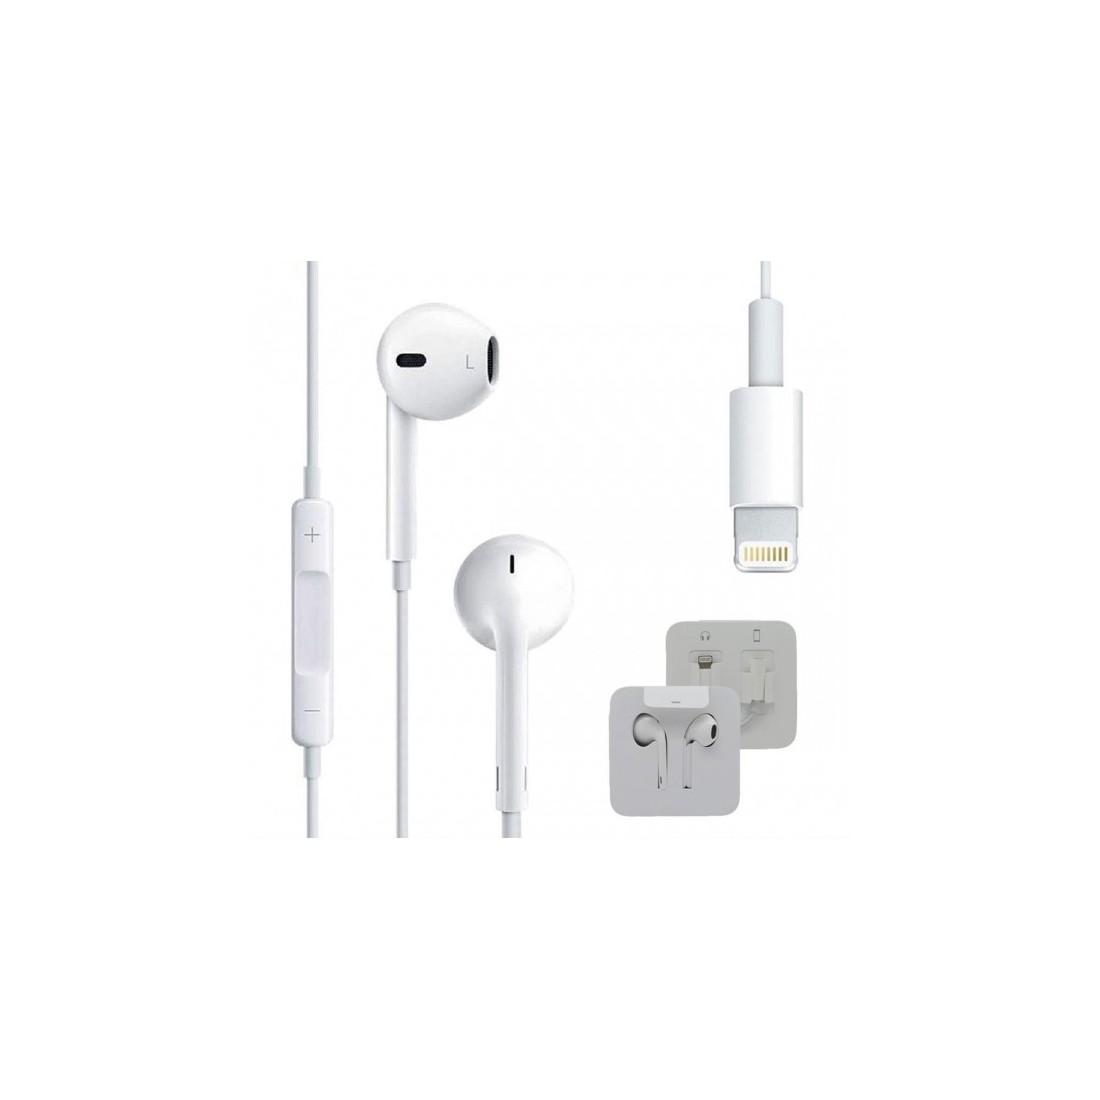 Écouteurs Apple EarPods avec connecteur Lightning pour iPhone/iPad/iPod